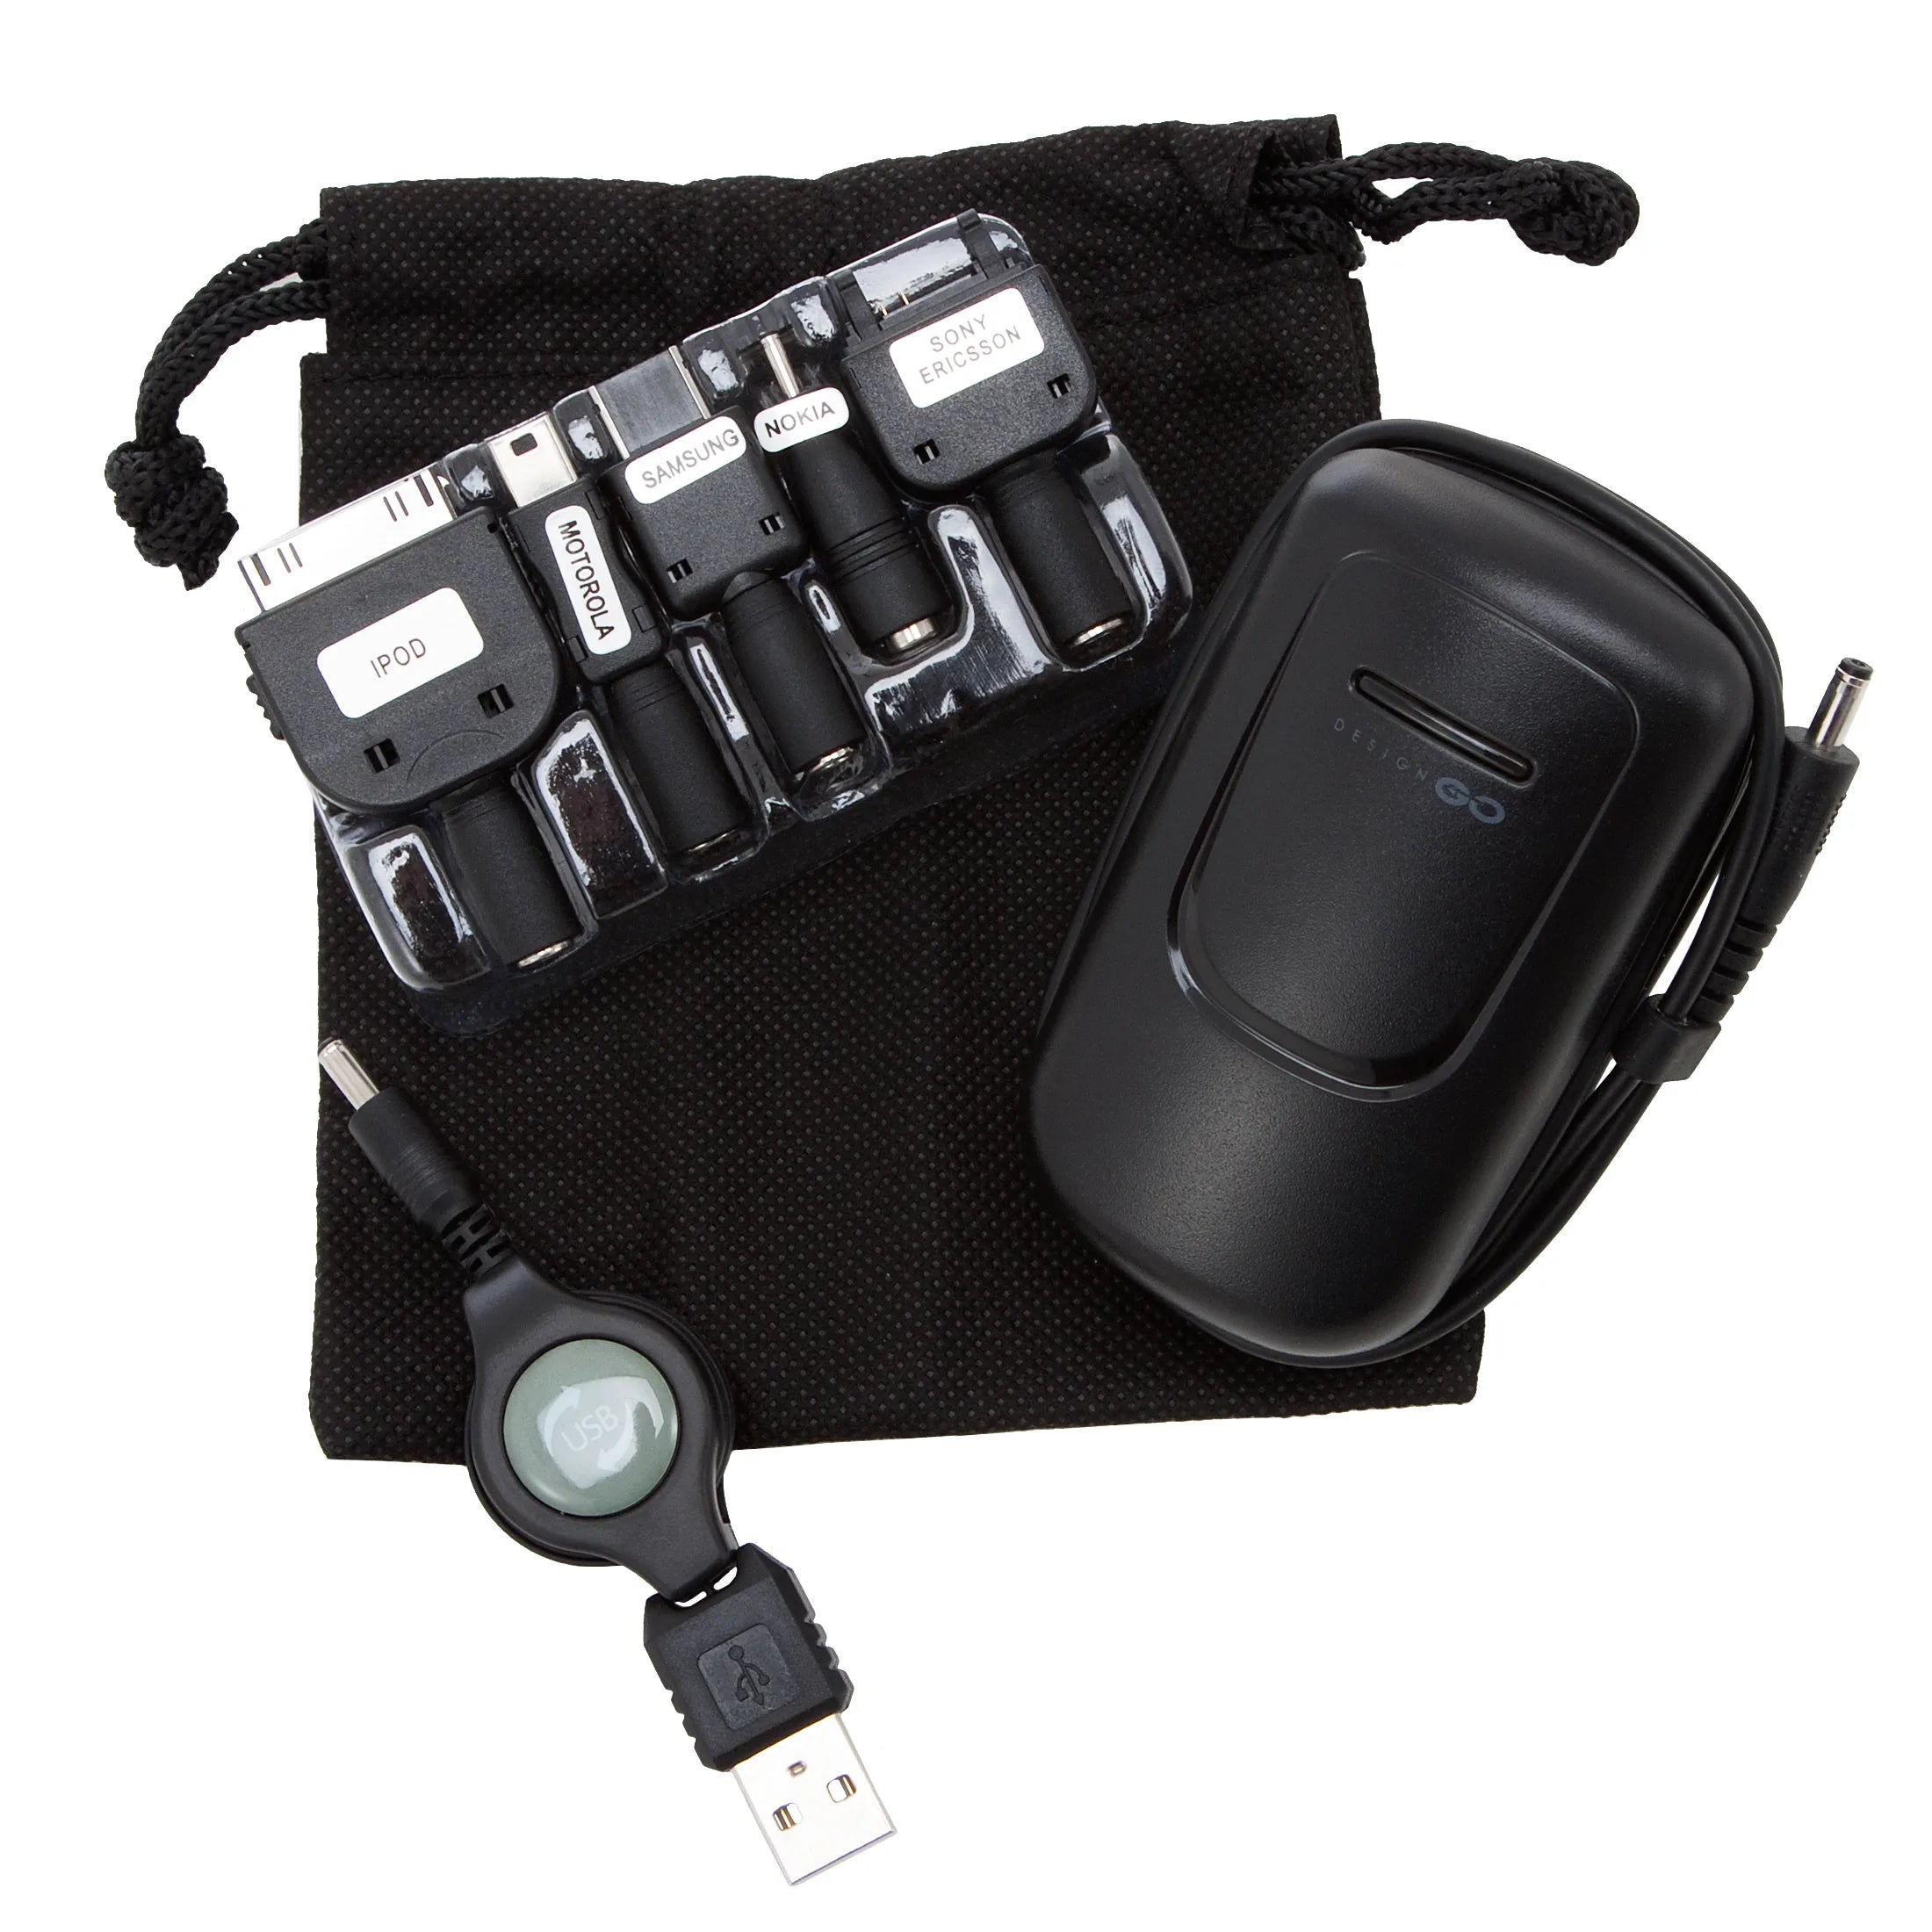 Le chargeur de voyage pour accessoires de voyage Design Go charge 2 appareils en même temps - noir